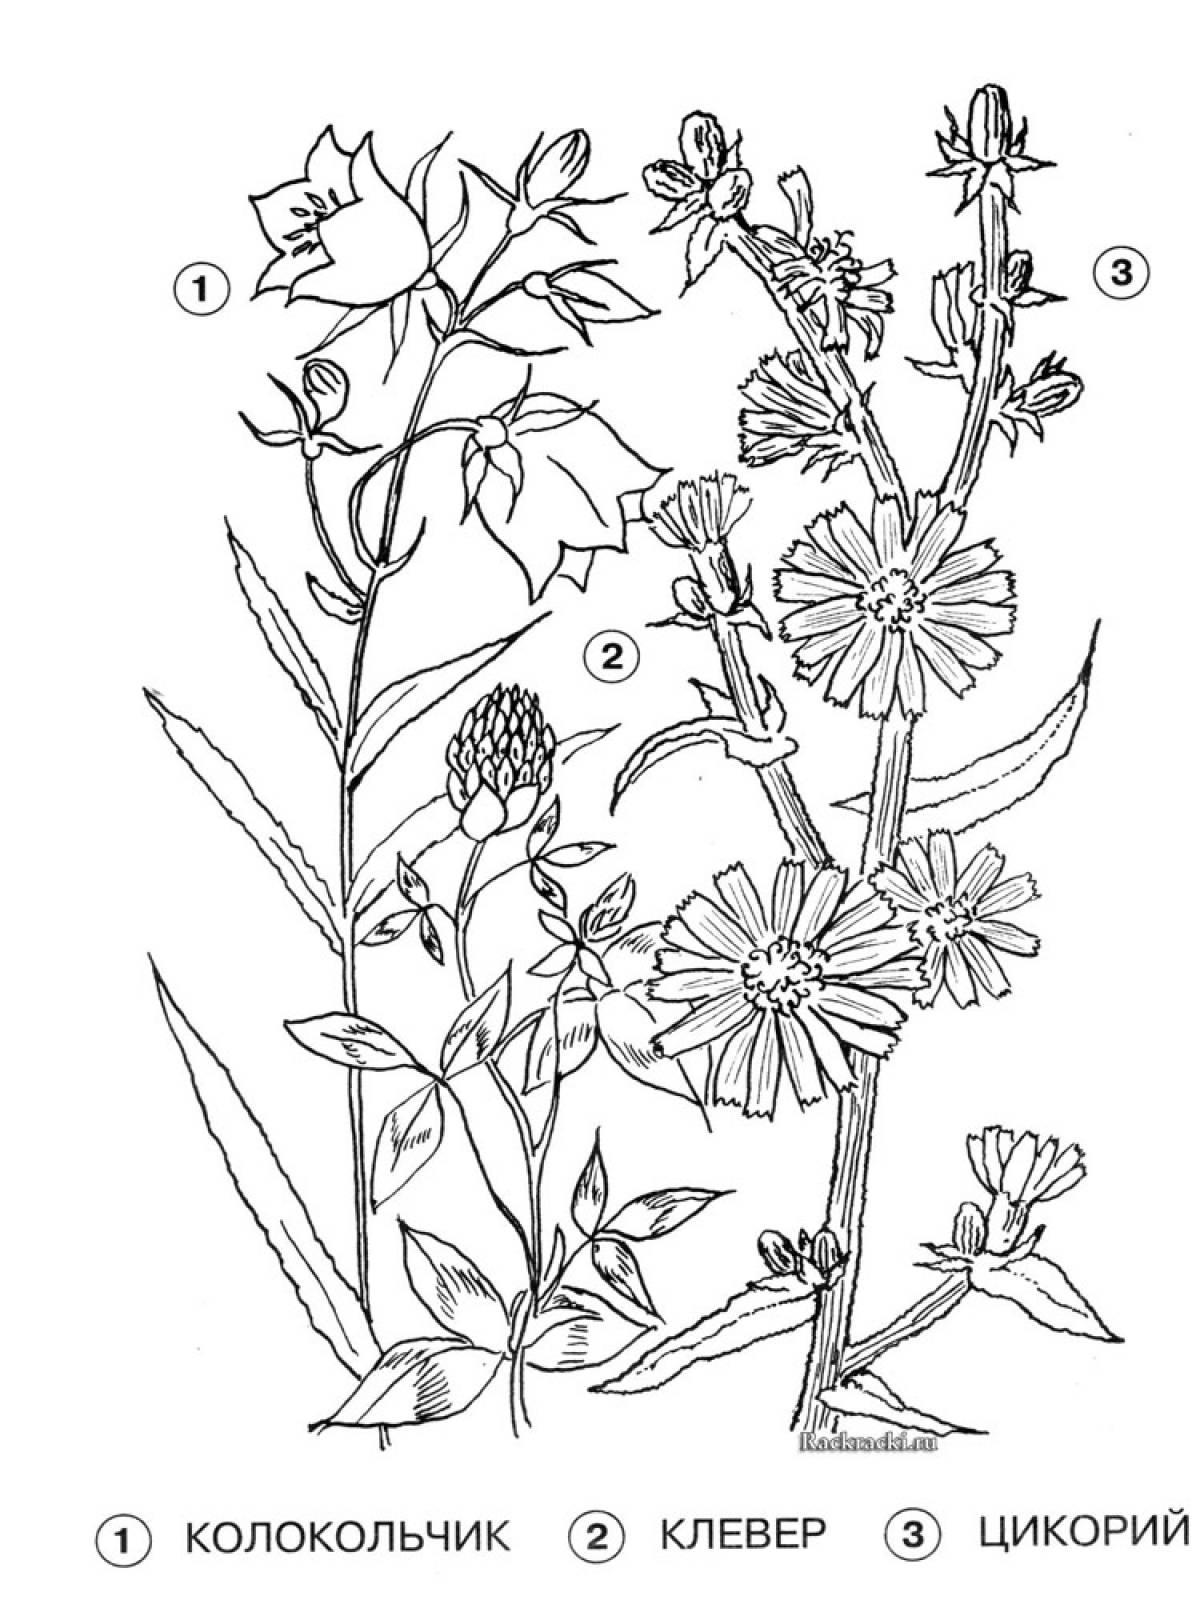 Medicinal plants coloring page